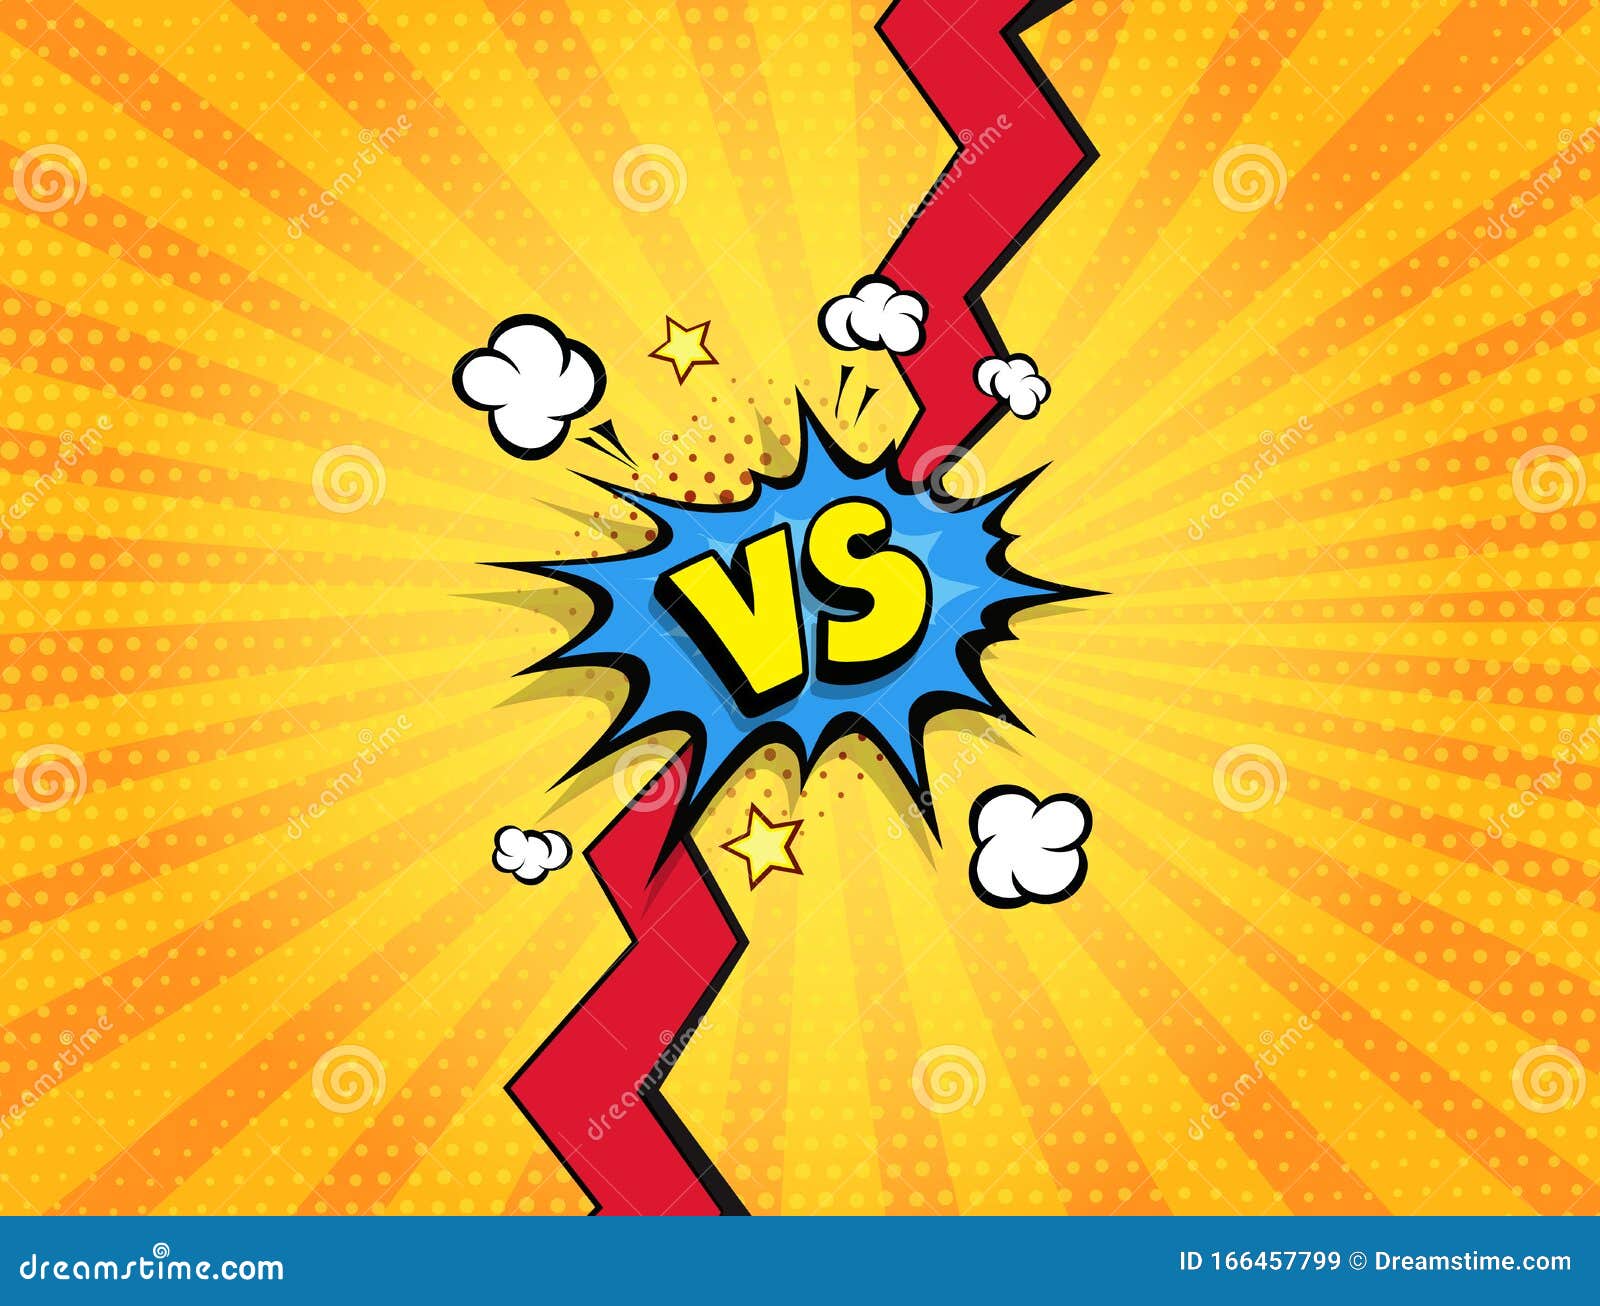 反文字对抗背景漫画风格设计vs Battle Challenge Poster Pop Art Vector Illustration 向量例证 插画包括有背包徒步旅行者 框架